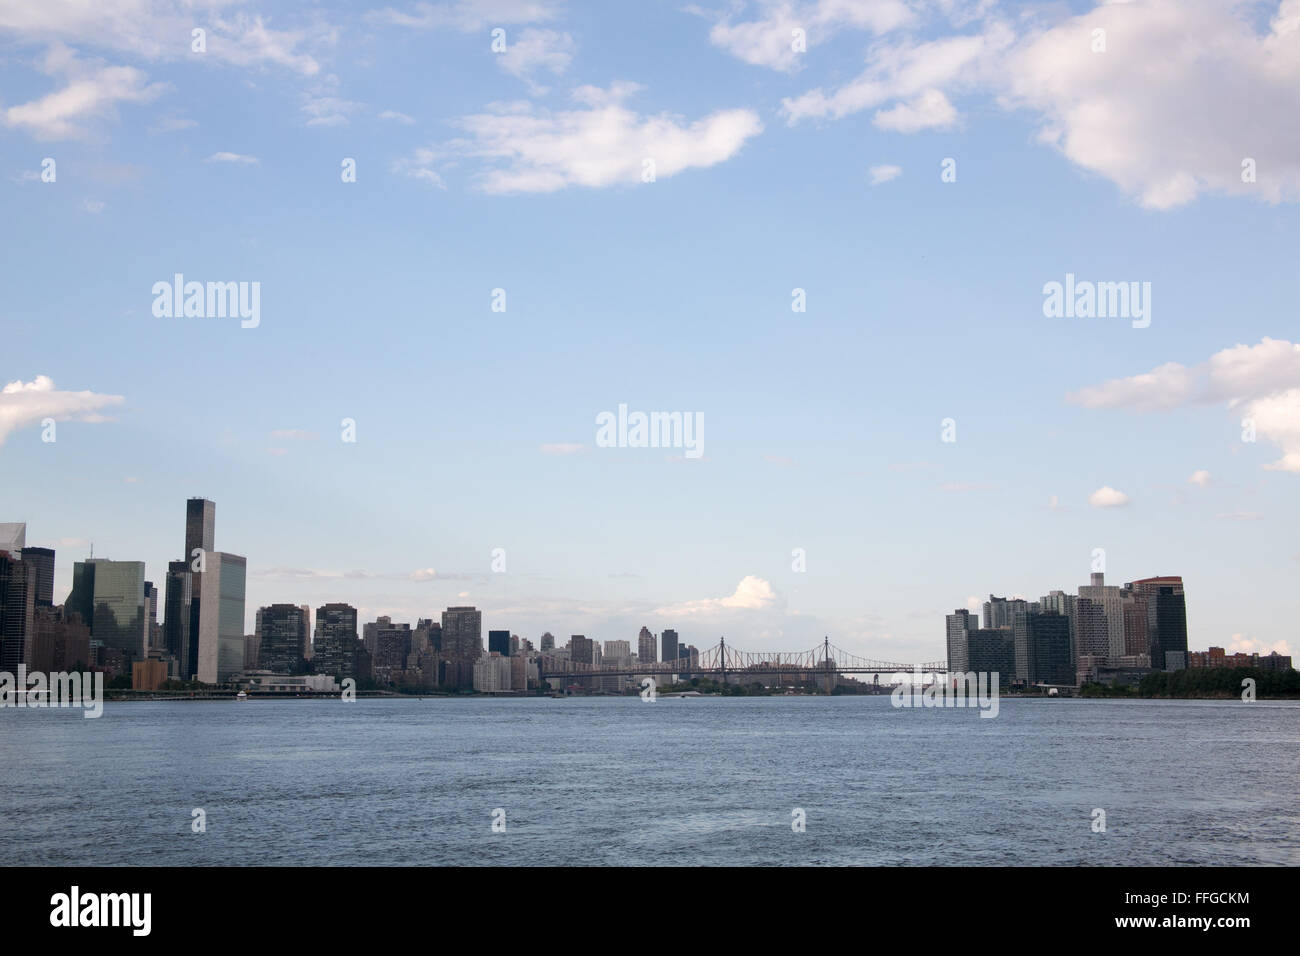 La ville de Long Island et Manhattan skyline, New York. Banque D'Images